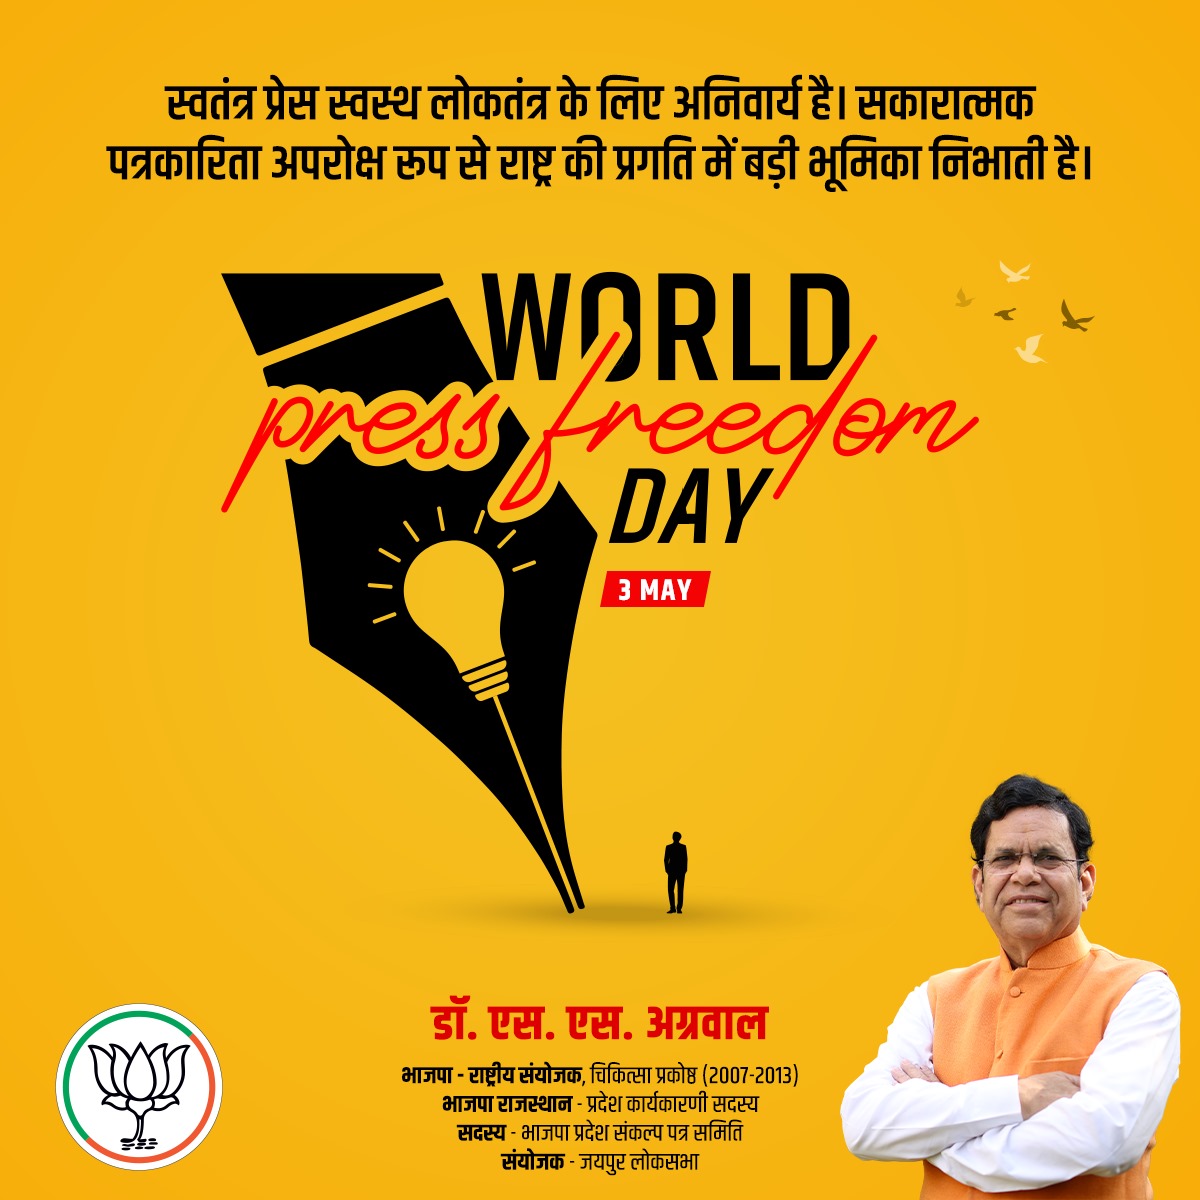 भारतीय एकता, अखंडता एवं सामाजिक सौहार्द में महत्वपूर्ण भूमिका निभाने वाले लोकतंत्र के सशक्त प्रहरी समस्त मीडिया कर्मियों को विश्व प्रेस स्वतंत्रता दिवस की हार्दिक शुभकामनाएं।📰🙏

#SsAgarwal #DrSsAgarwal #BJP4U #BJPRajasthan #PressFreedom #MediaHeroes #UnityInDiversity